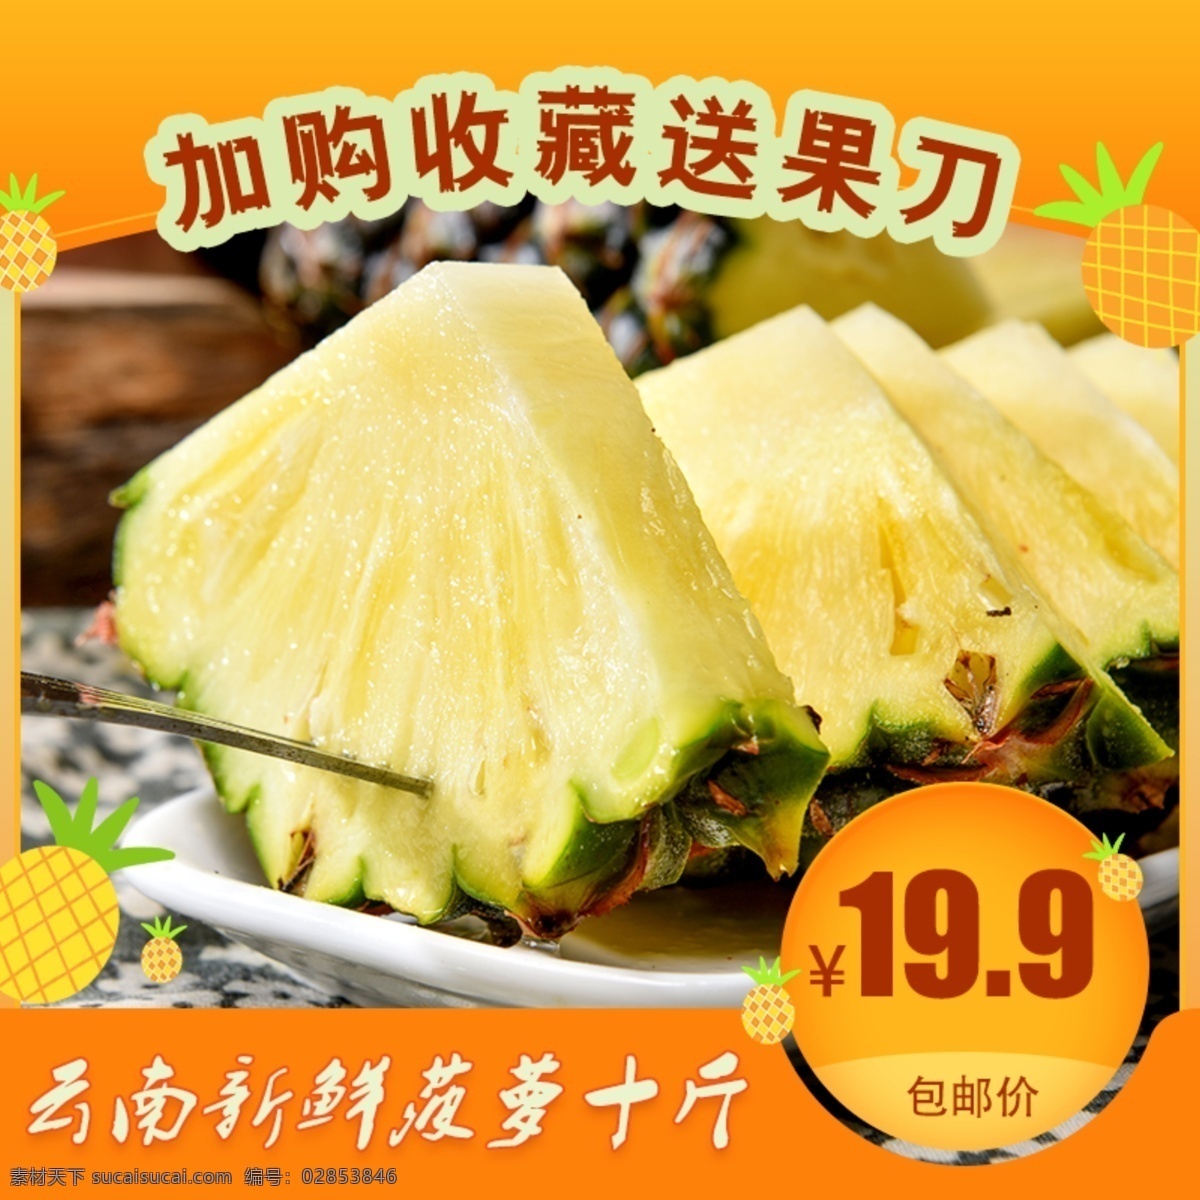 凤梨 菠萝 水果 主 图 云南新鲜菠萝 主图设计 进口水果 促销主图 天猫 淘宝